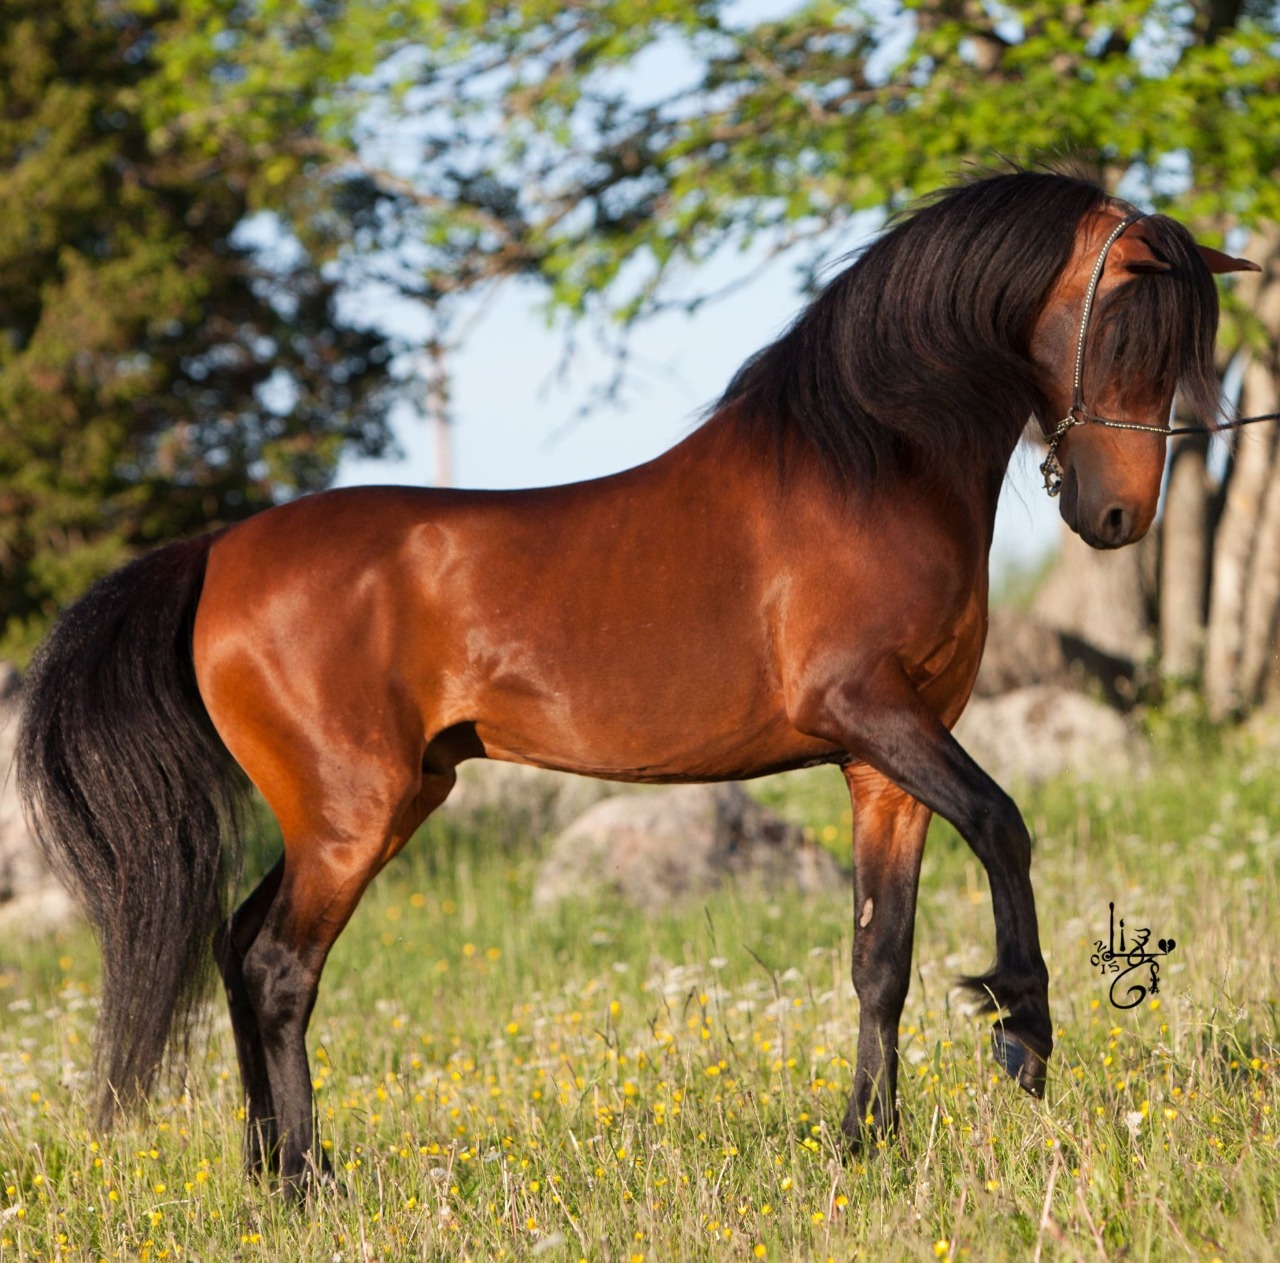 حصان بحر قزوين Caspian horse أقدم سلالات الخيول في العالم